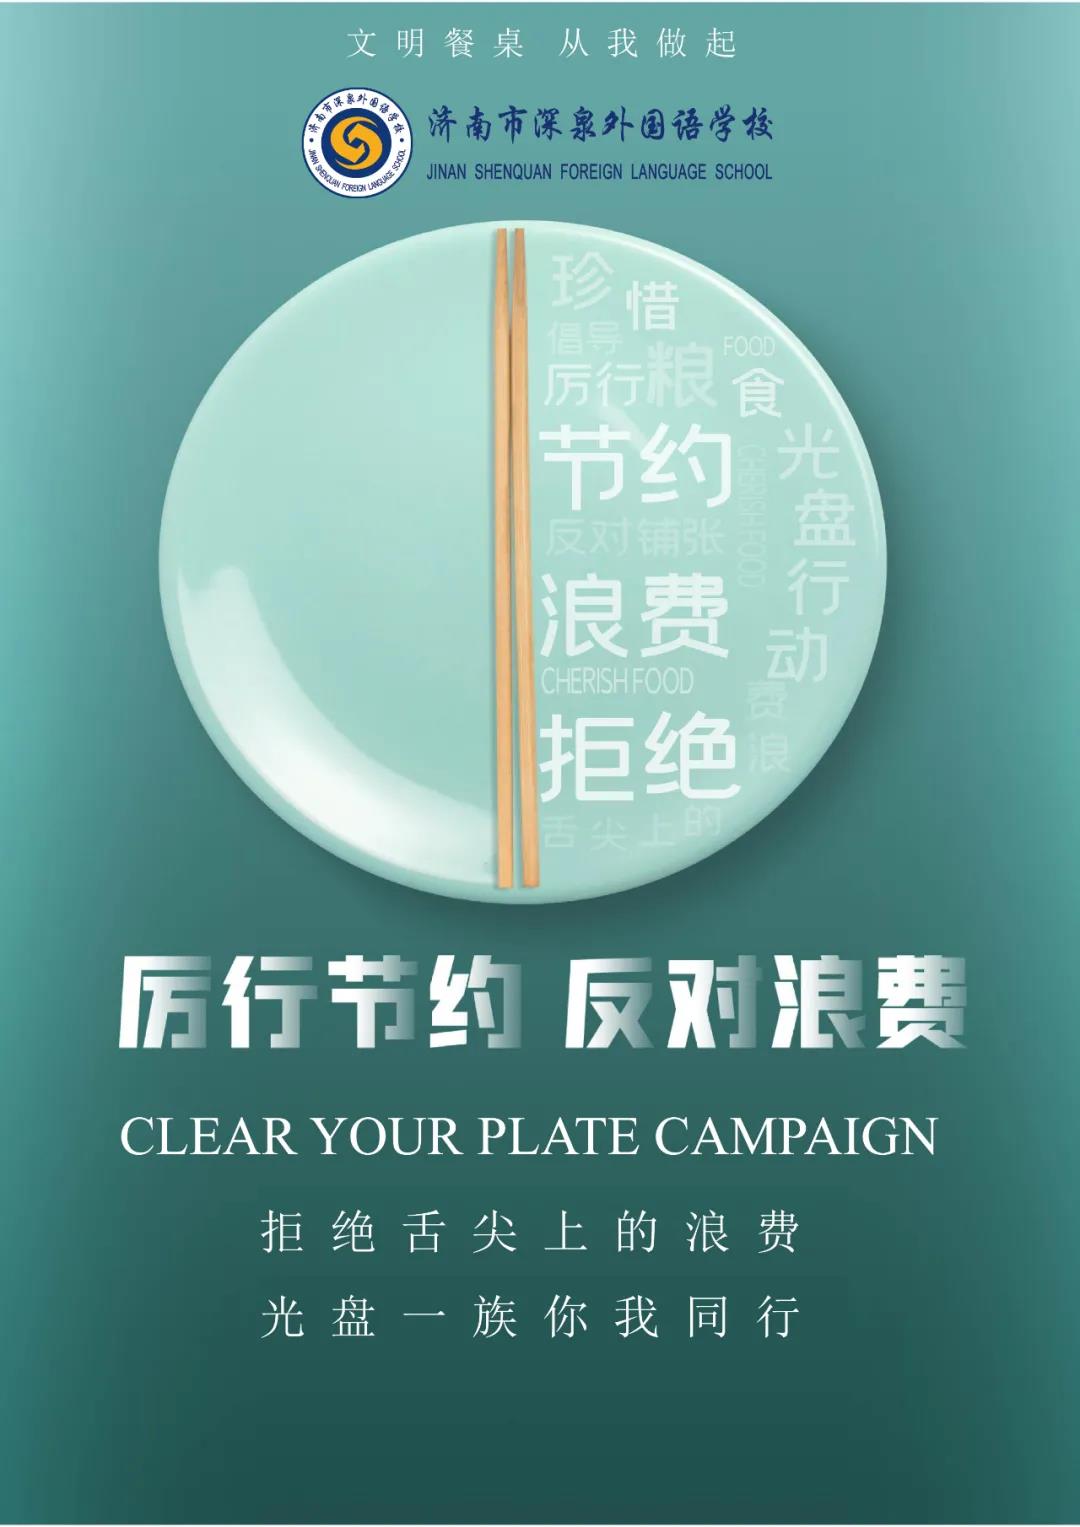 广东3-4月制止餐饮浪费专项调查涉嫌诱导超量点餐问题